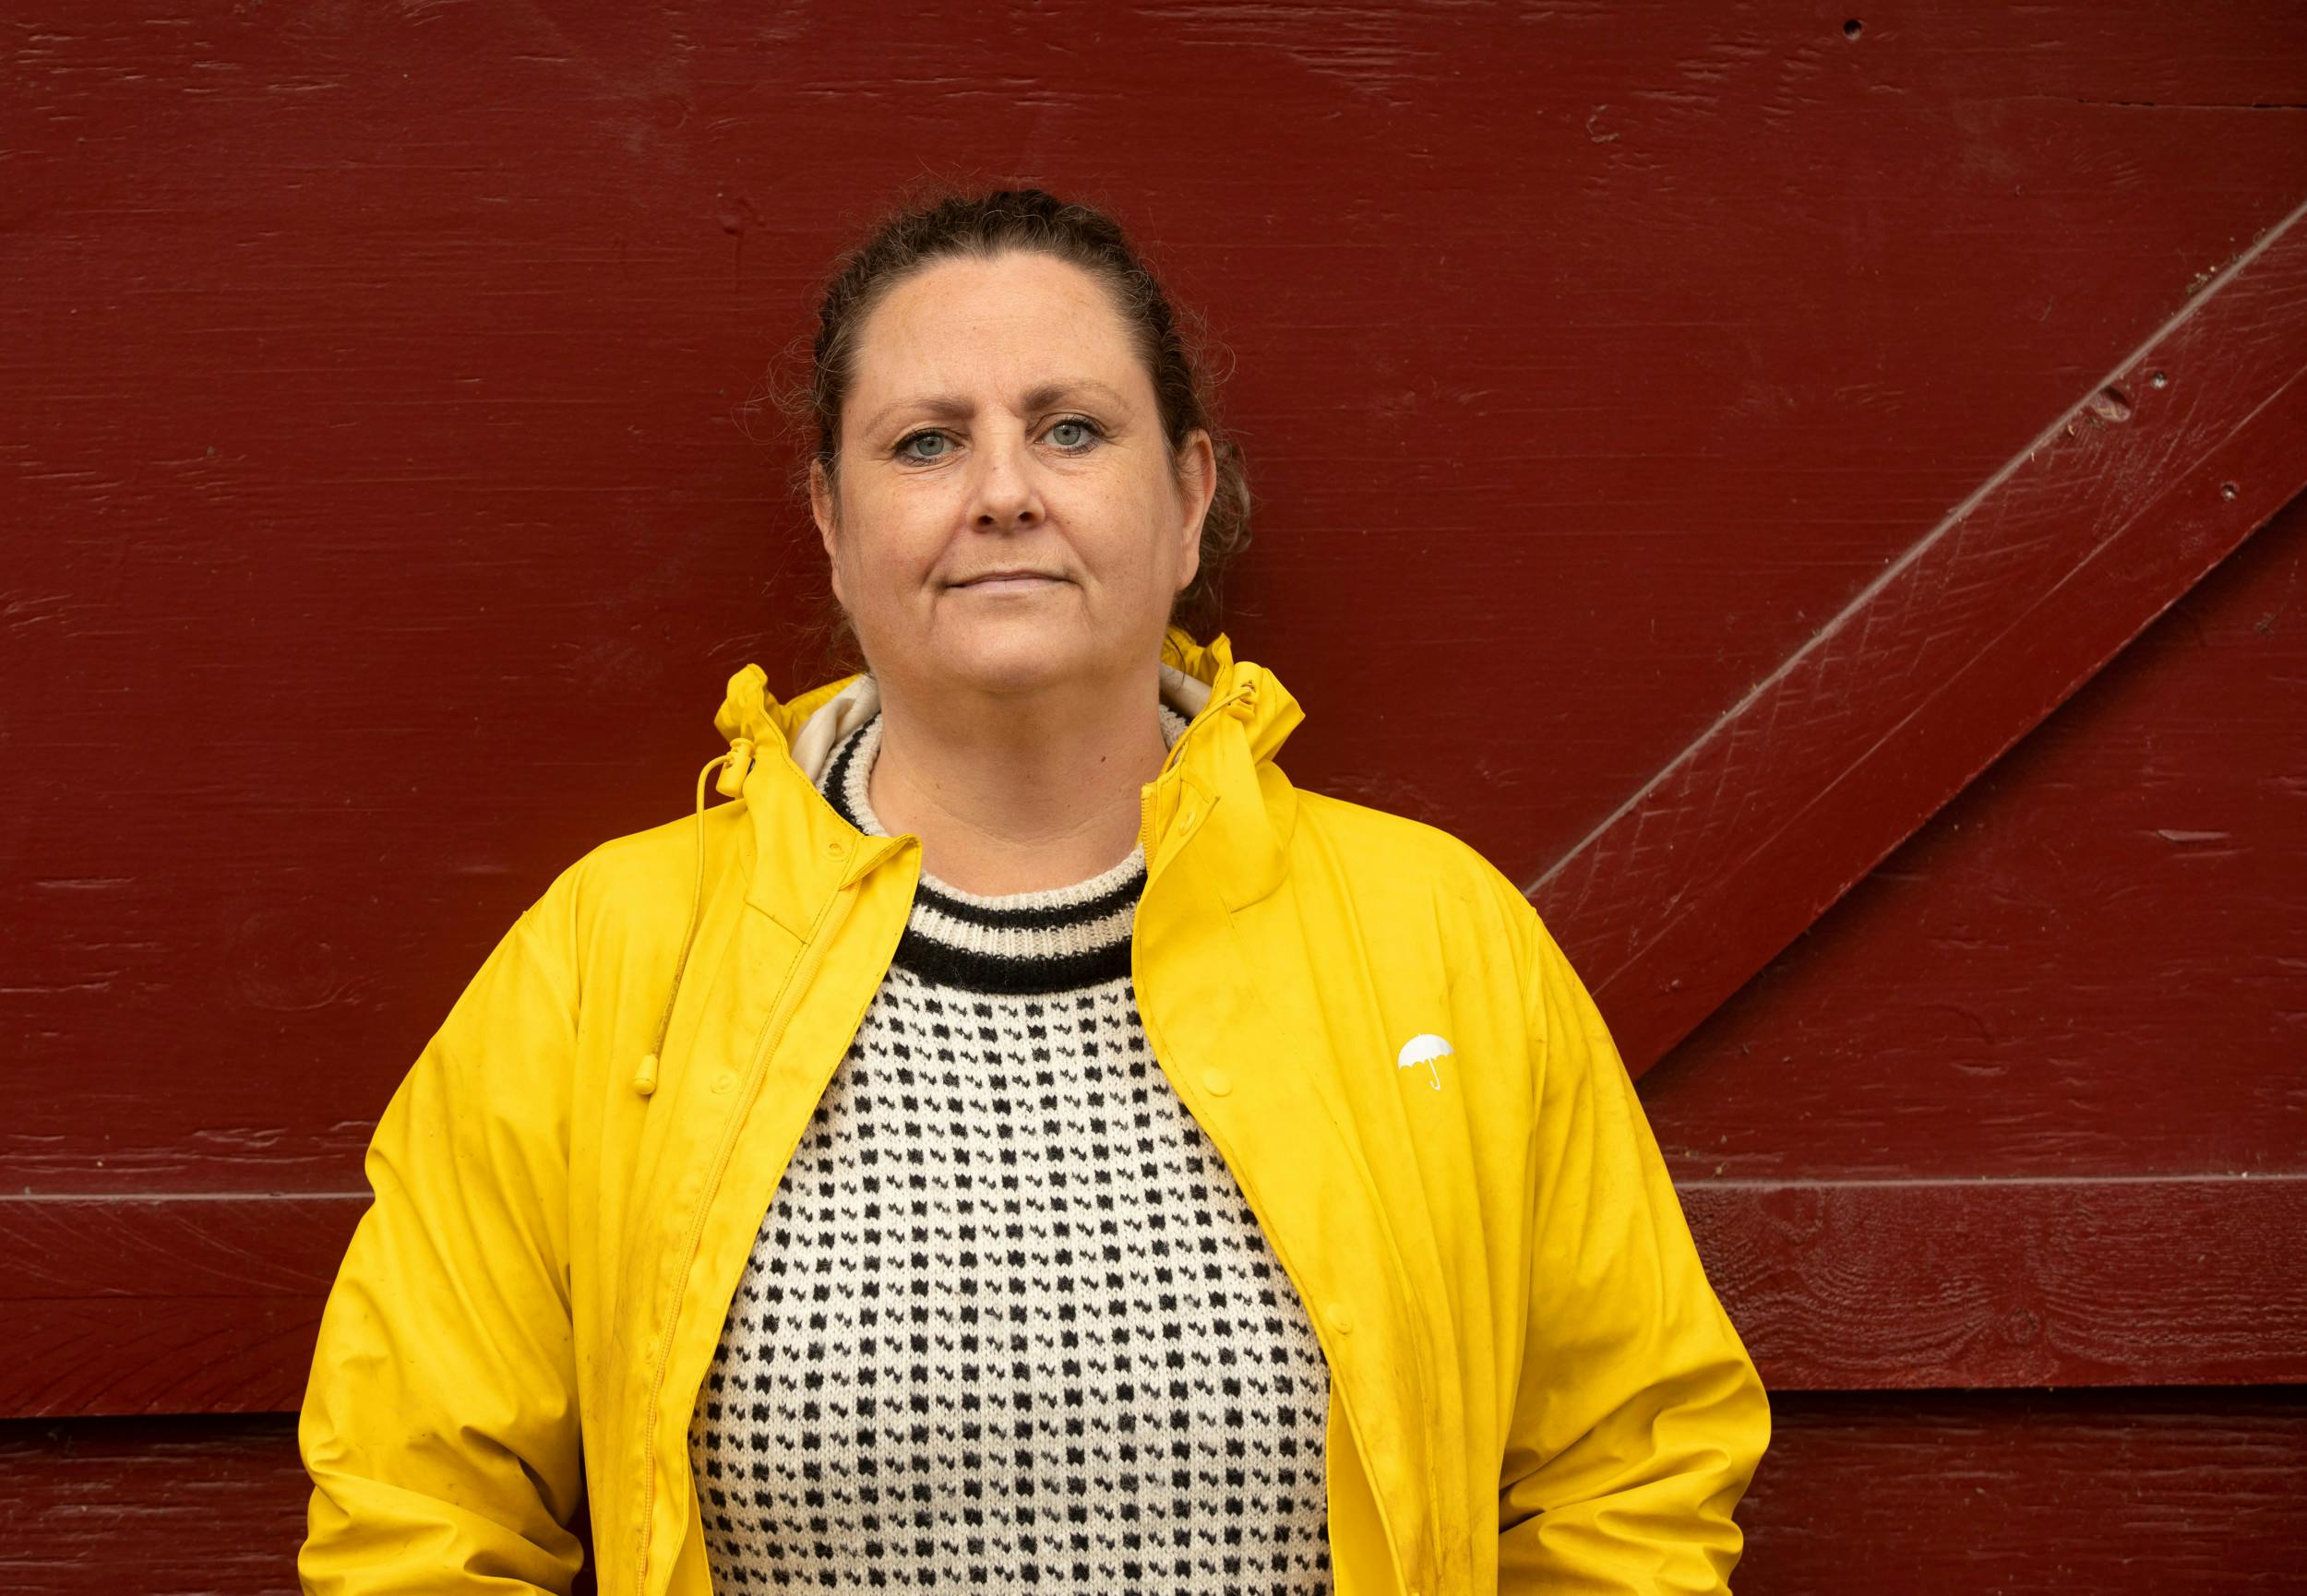  49-årige Lene Rygh fra Bærum i Norge